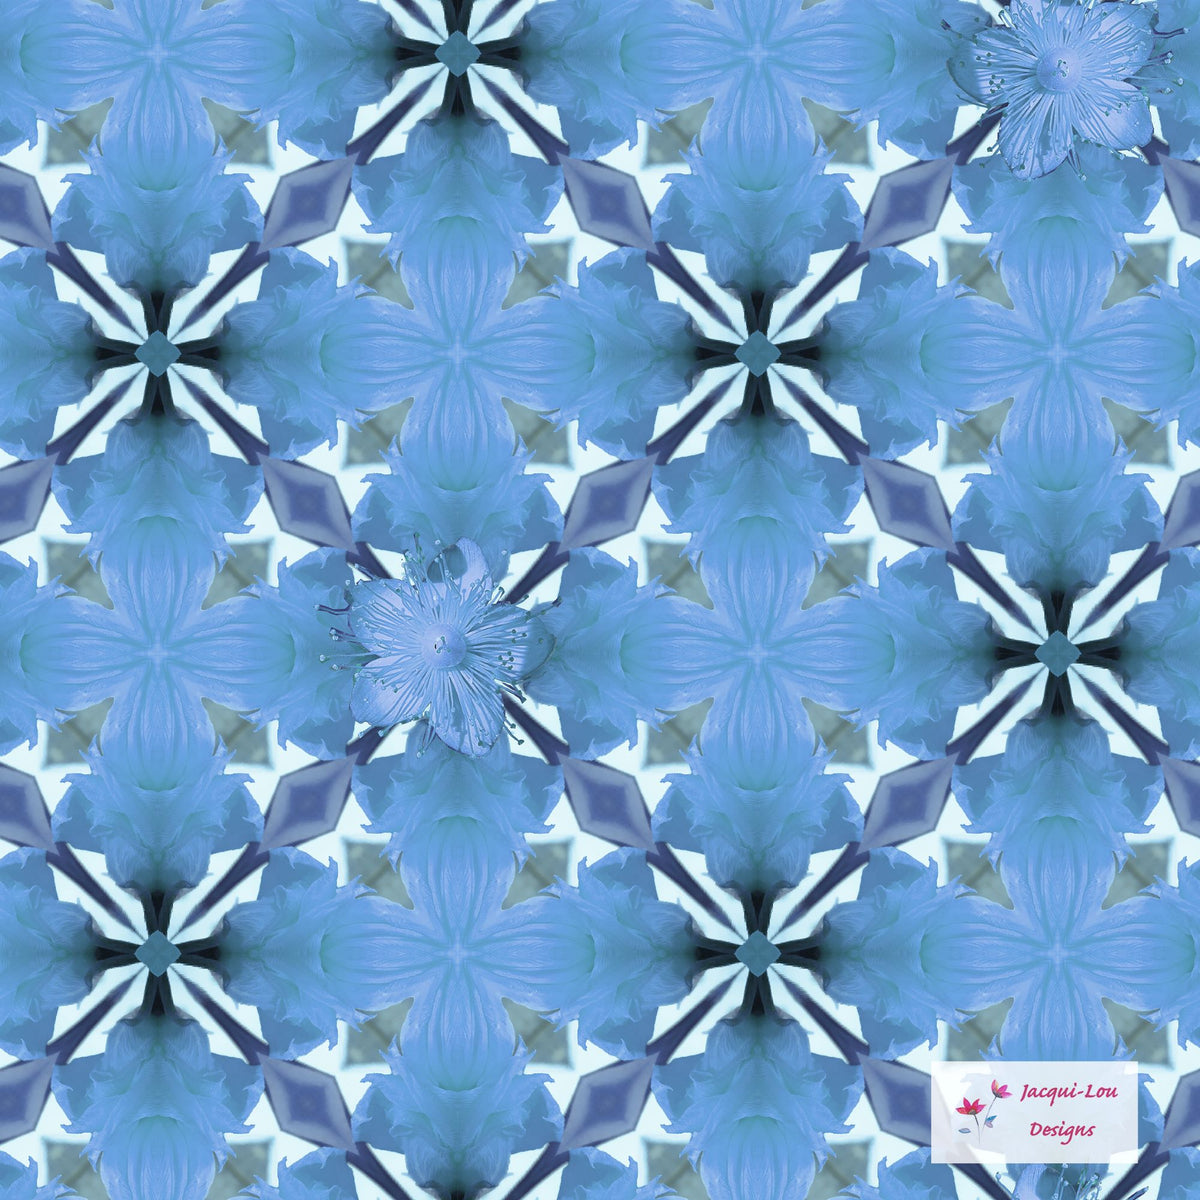 Floral Design - JE Blue Flower Mosaic by Jacqui Lou Designs